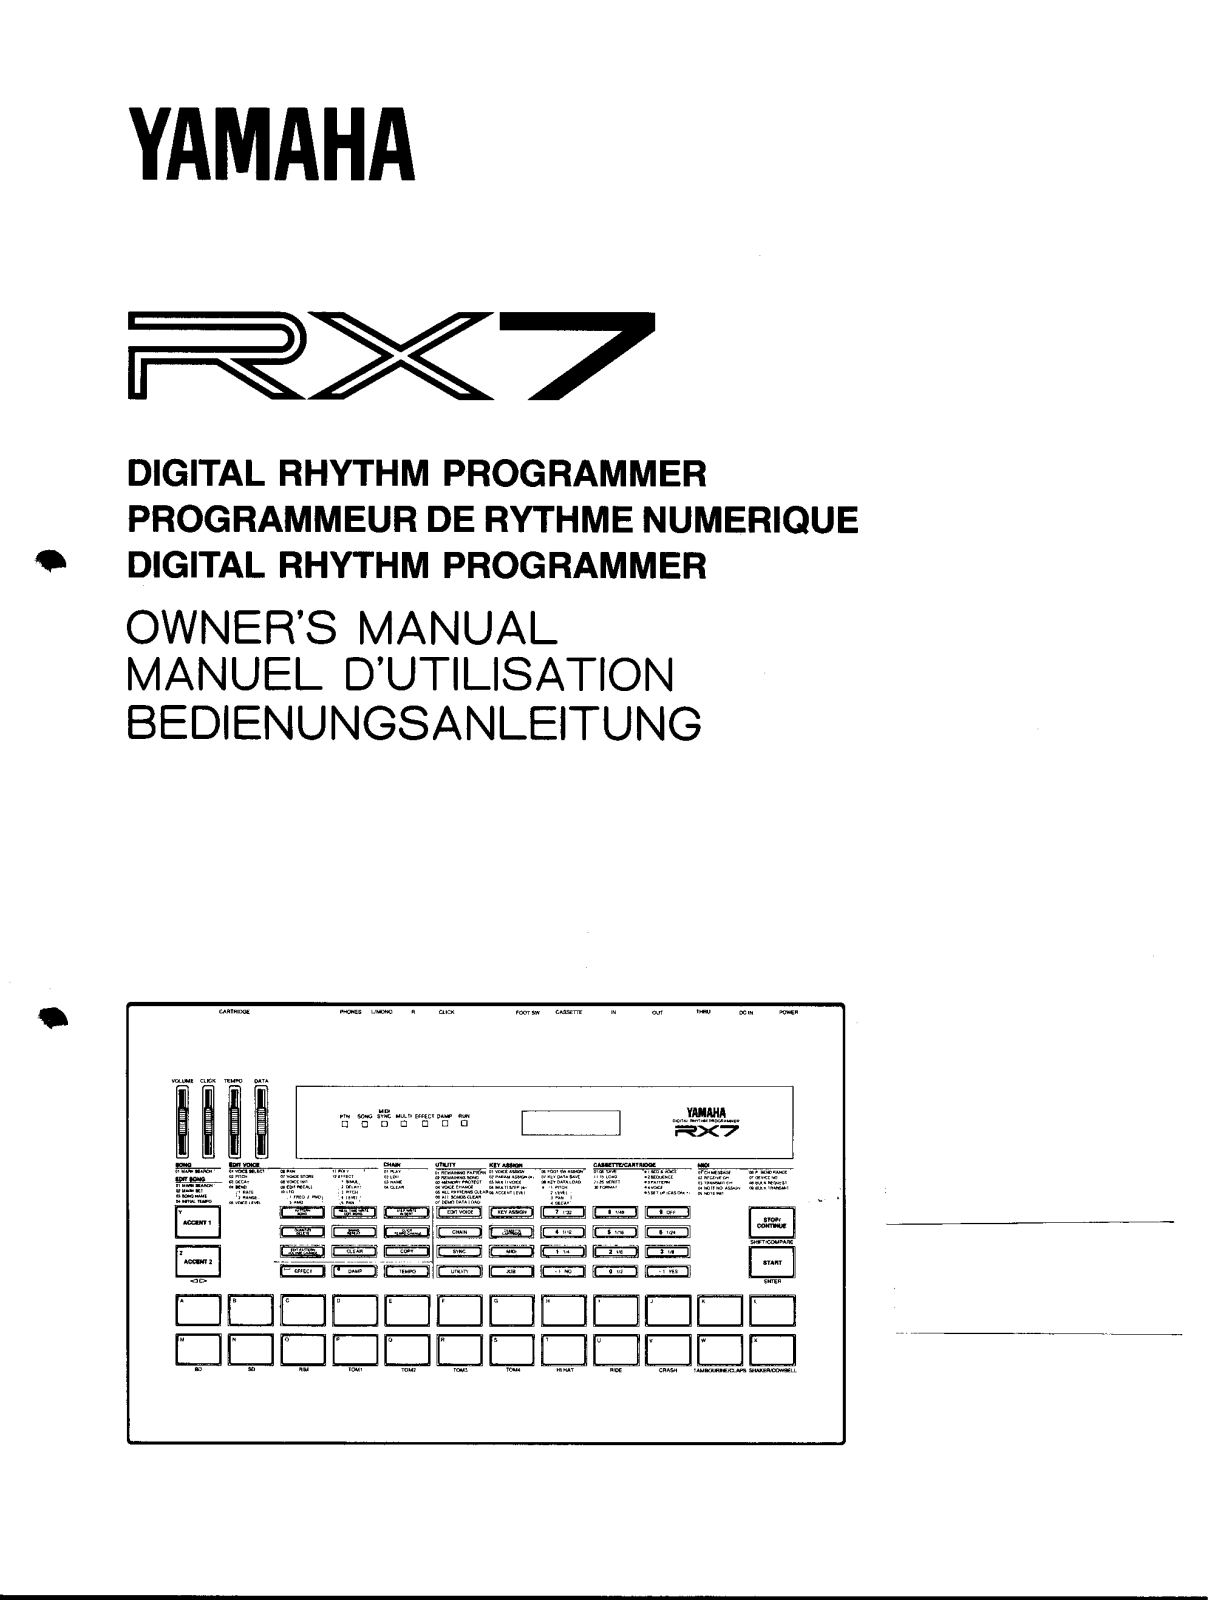 Yamaha RX7 Owner Manual